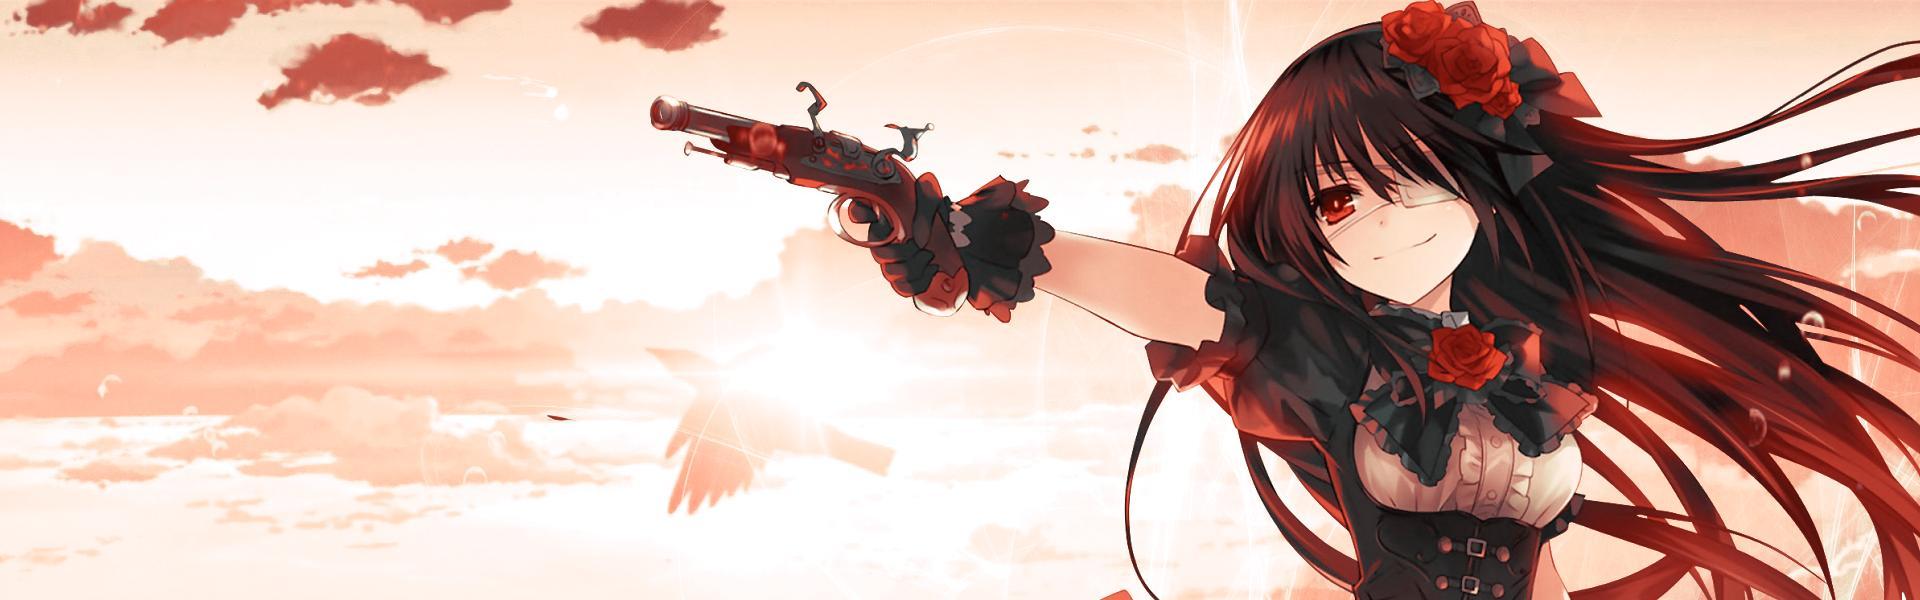 Hình ảnh Anime nữ cầm súng tuyệt đẹp